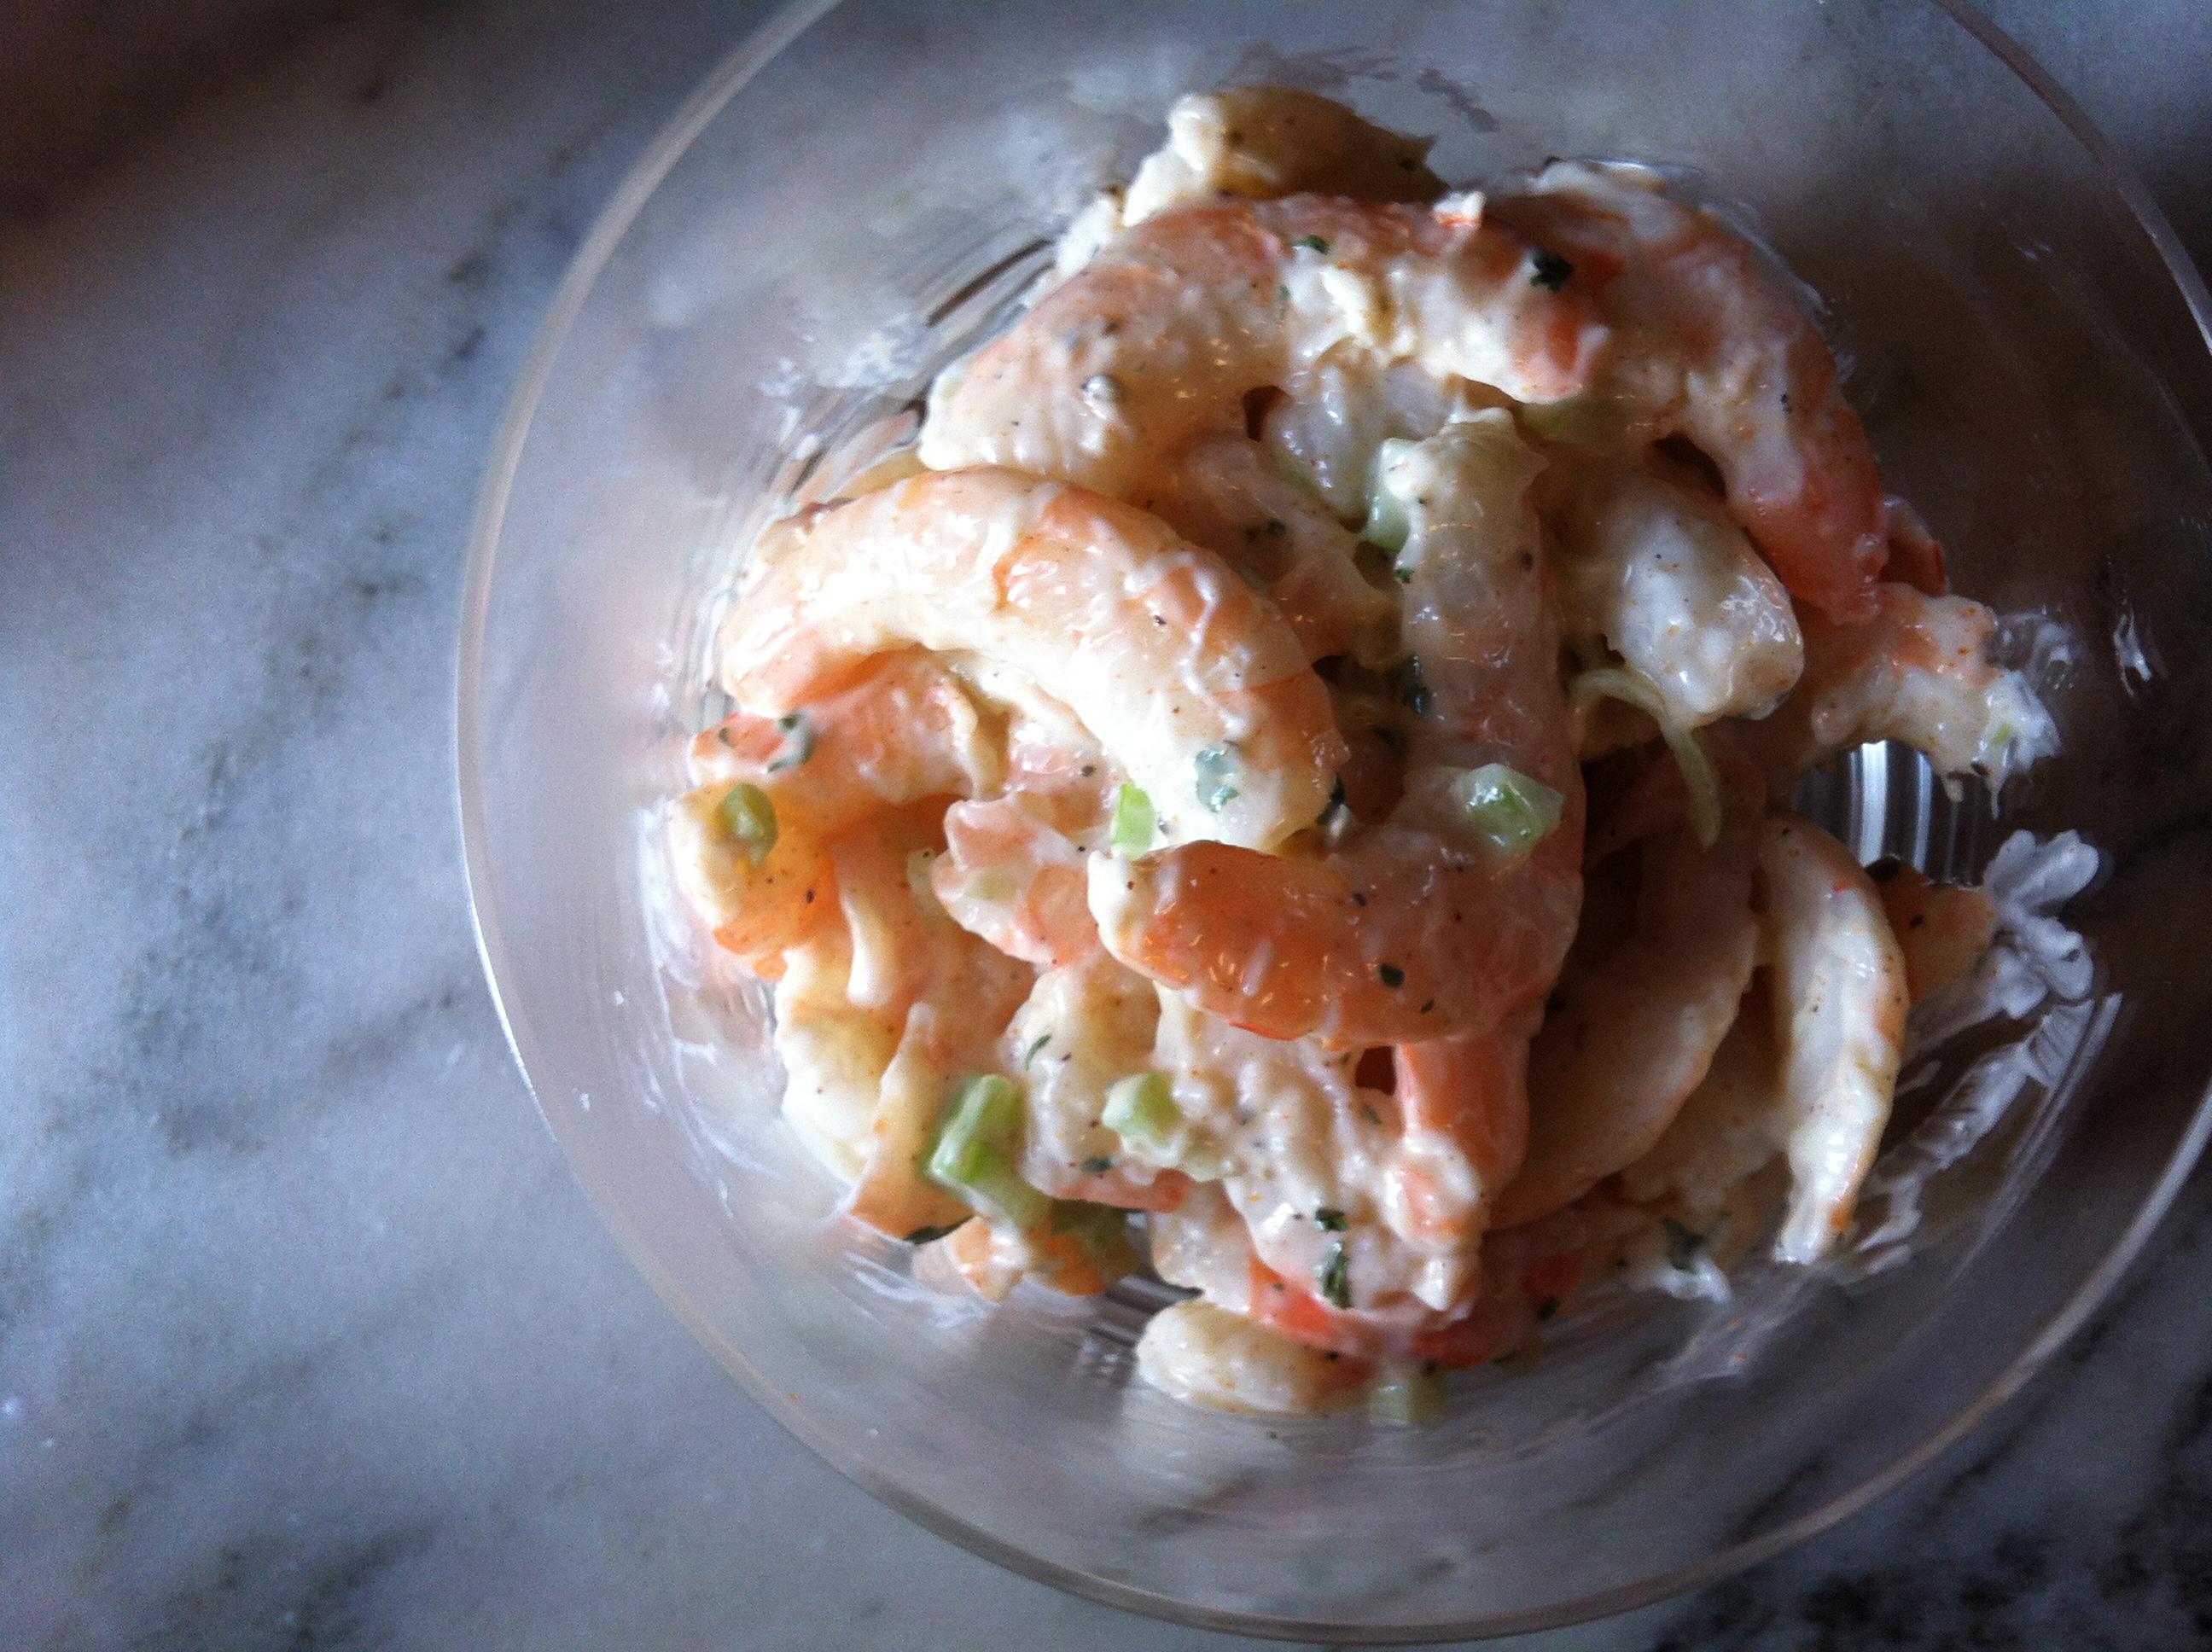 Maryland Shrimp Salad Recipe on Food52